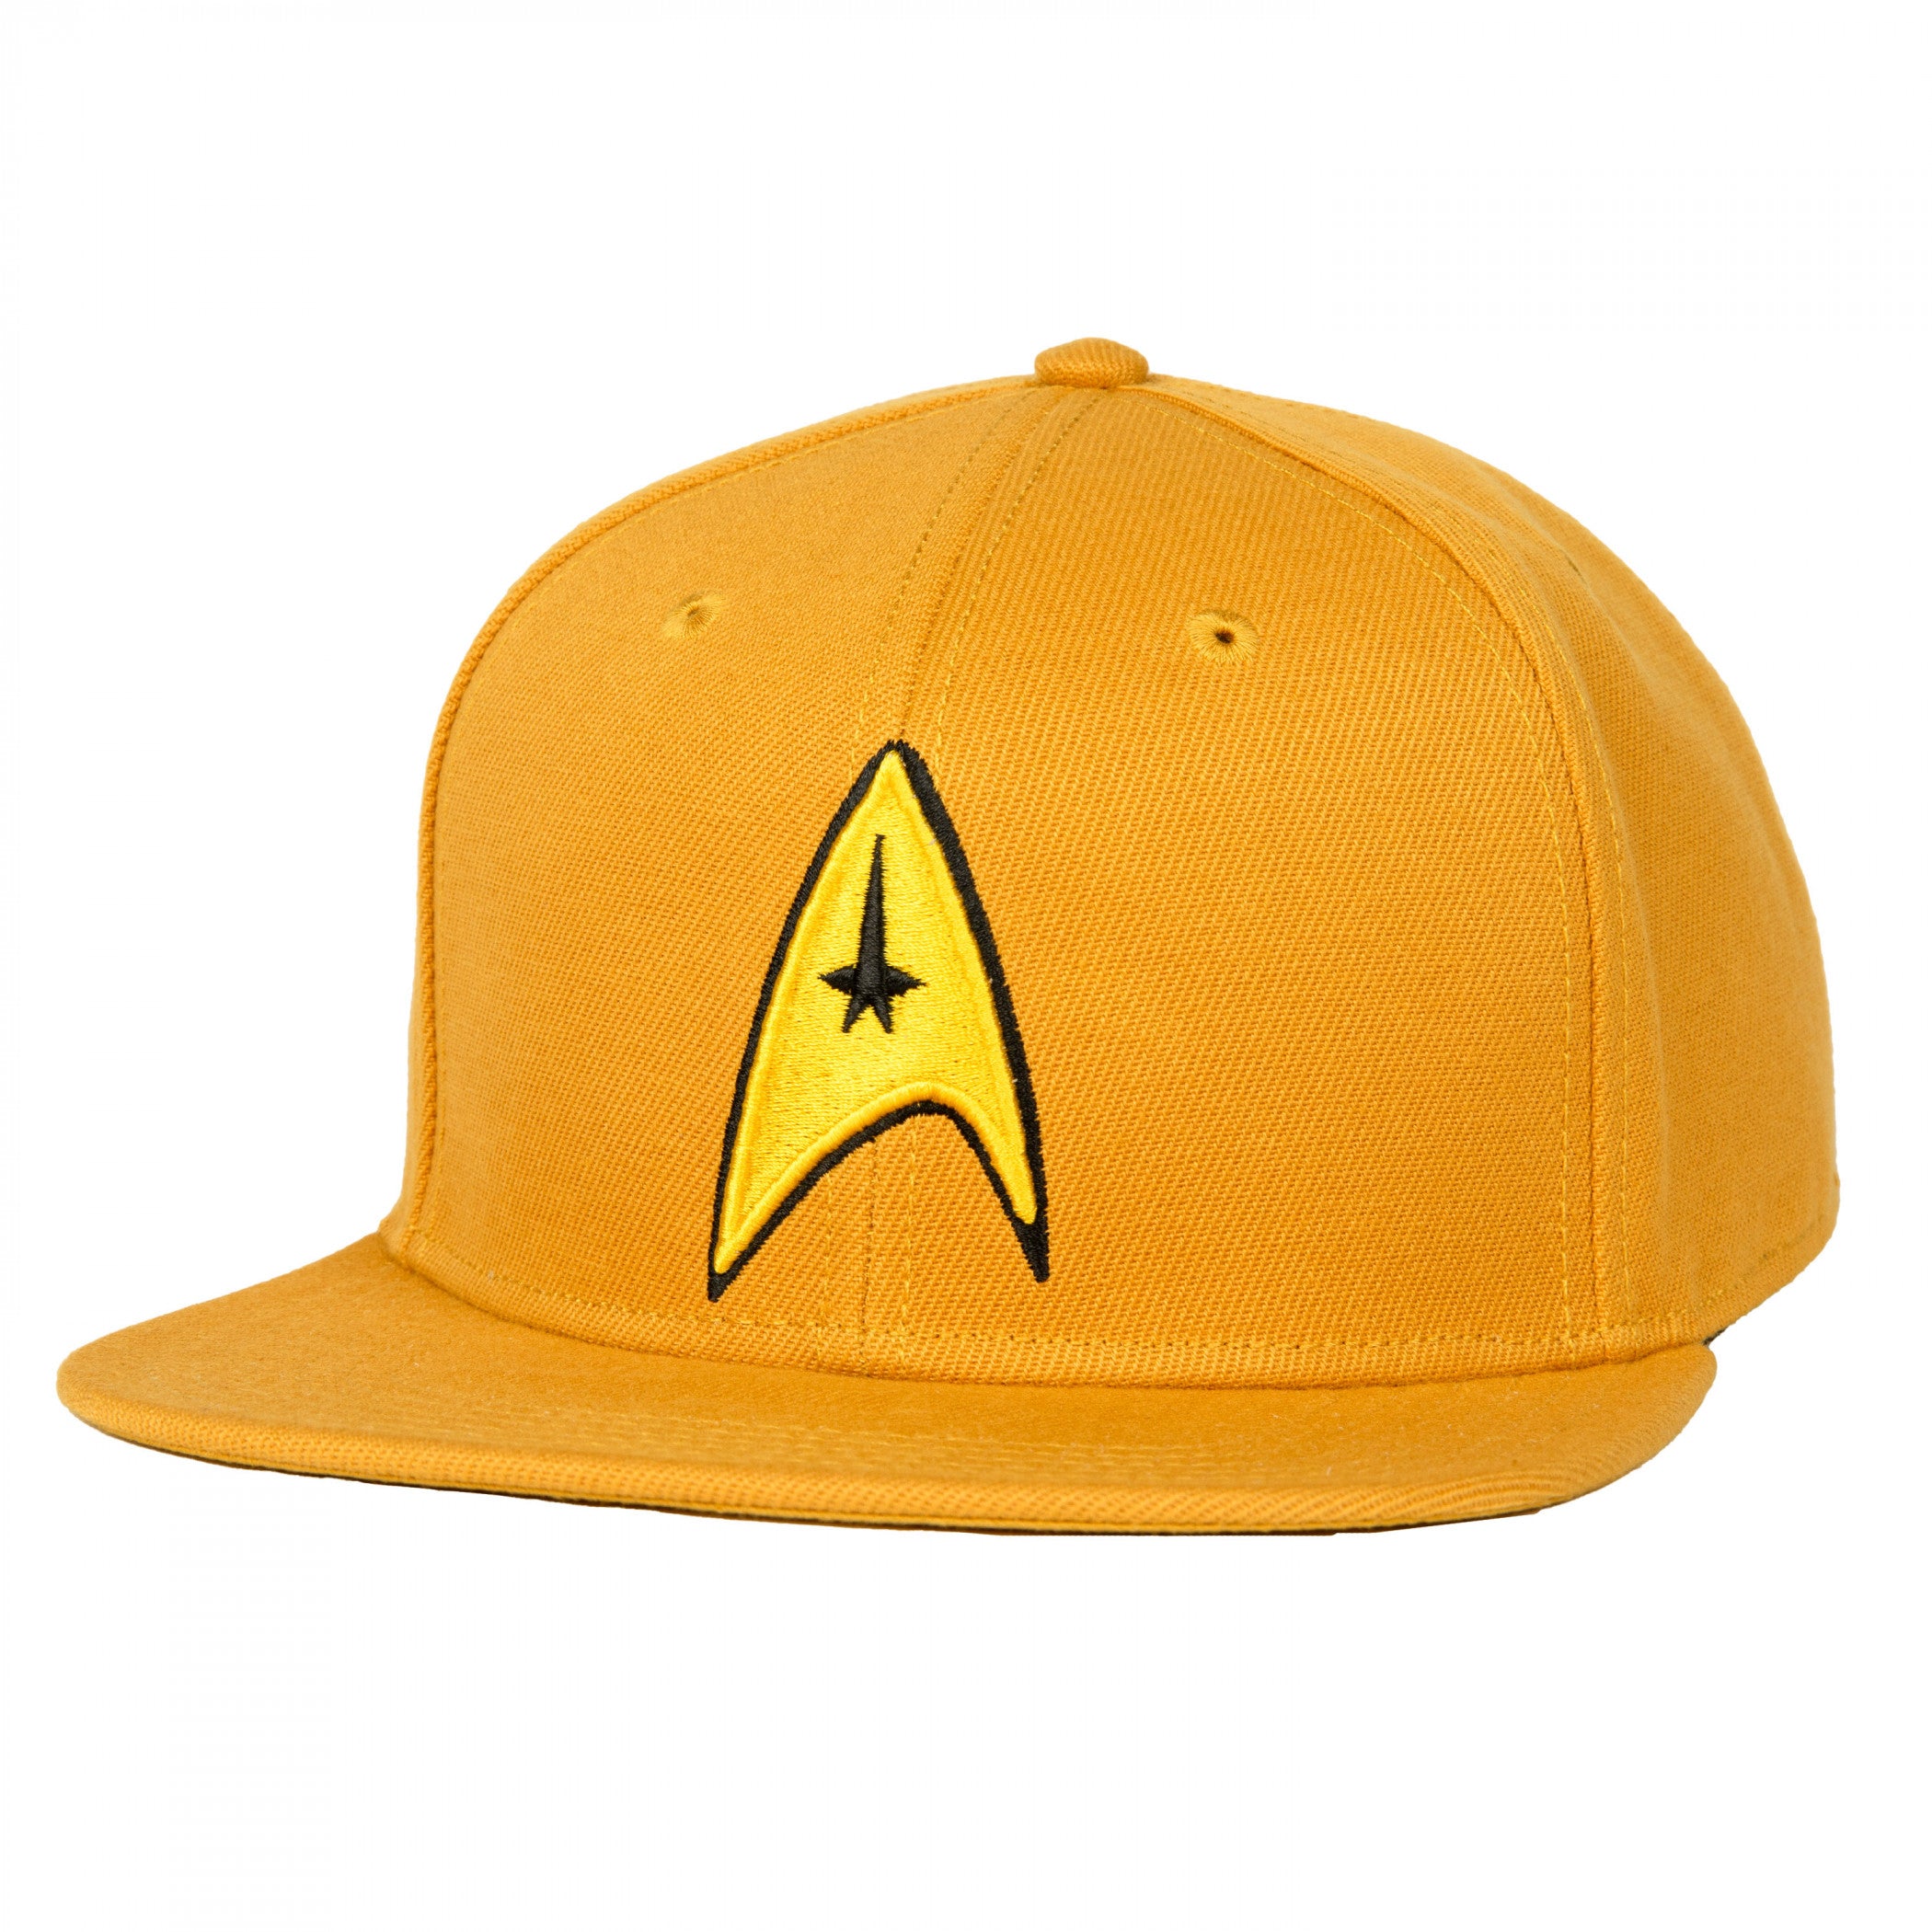 Star Trek Delta Insignia Flat Bill Snapback Hat